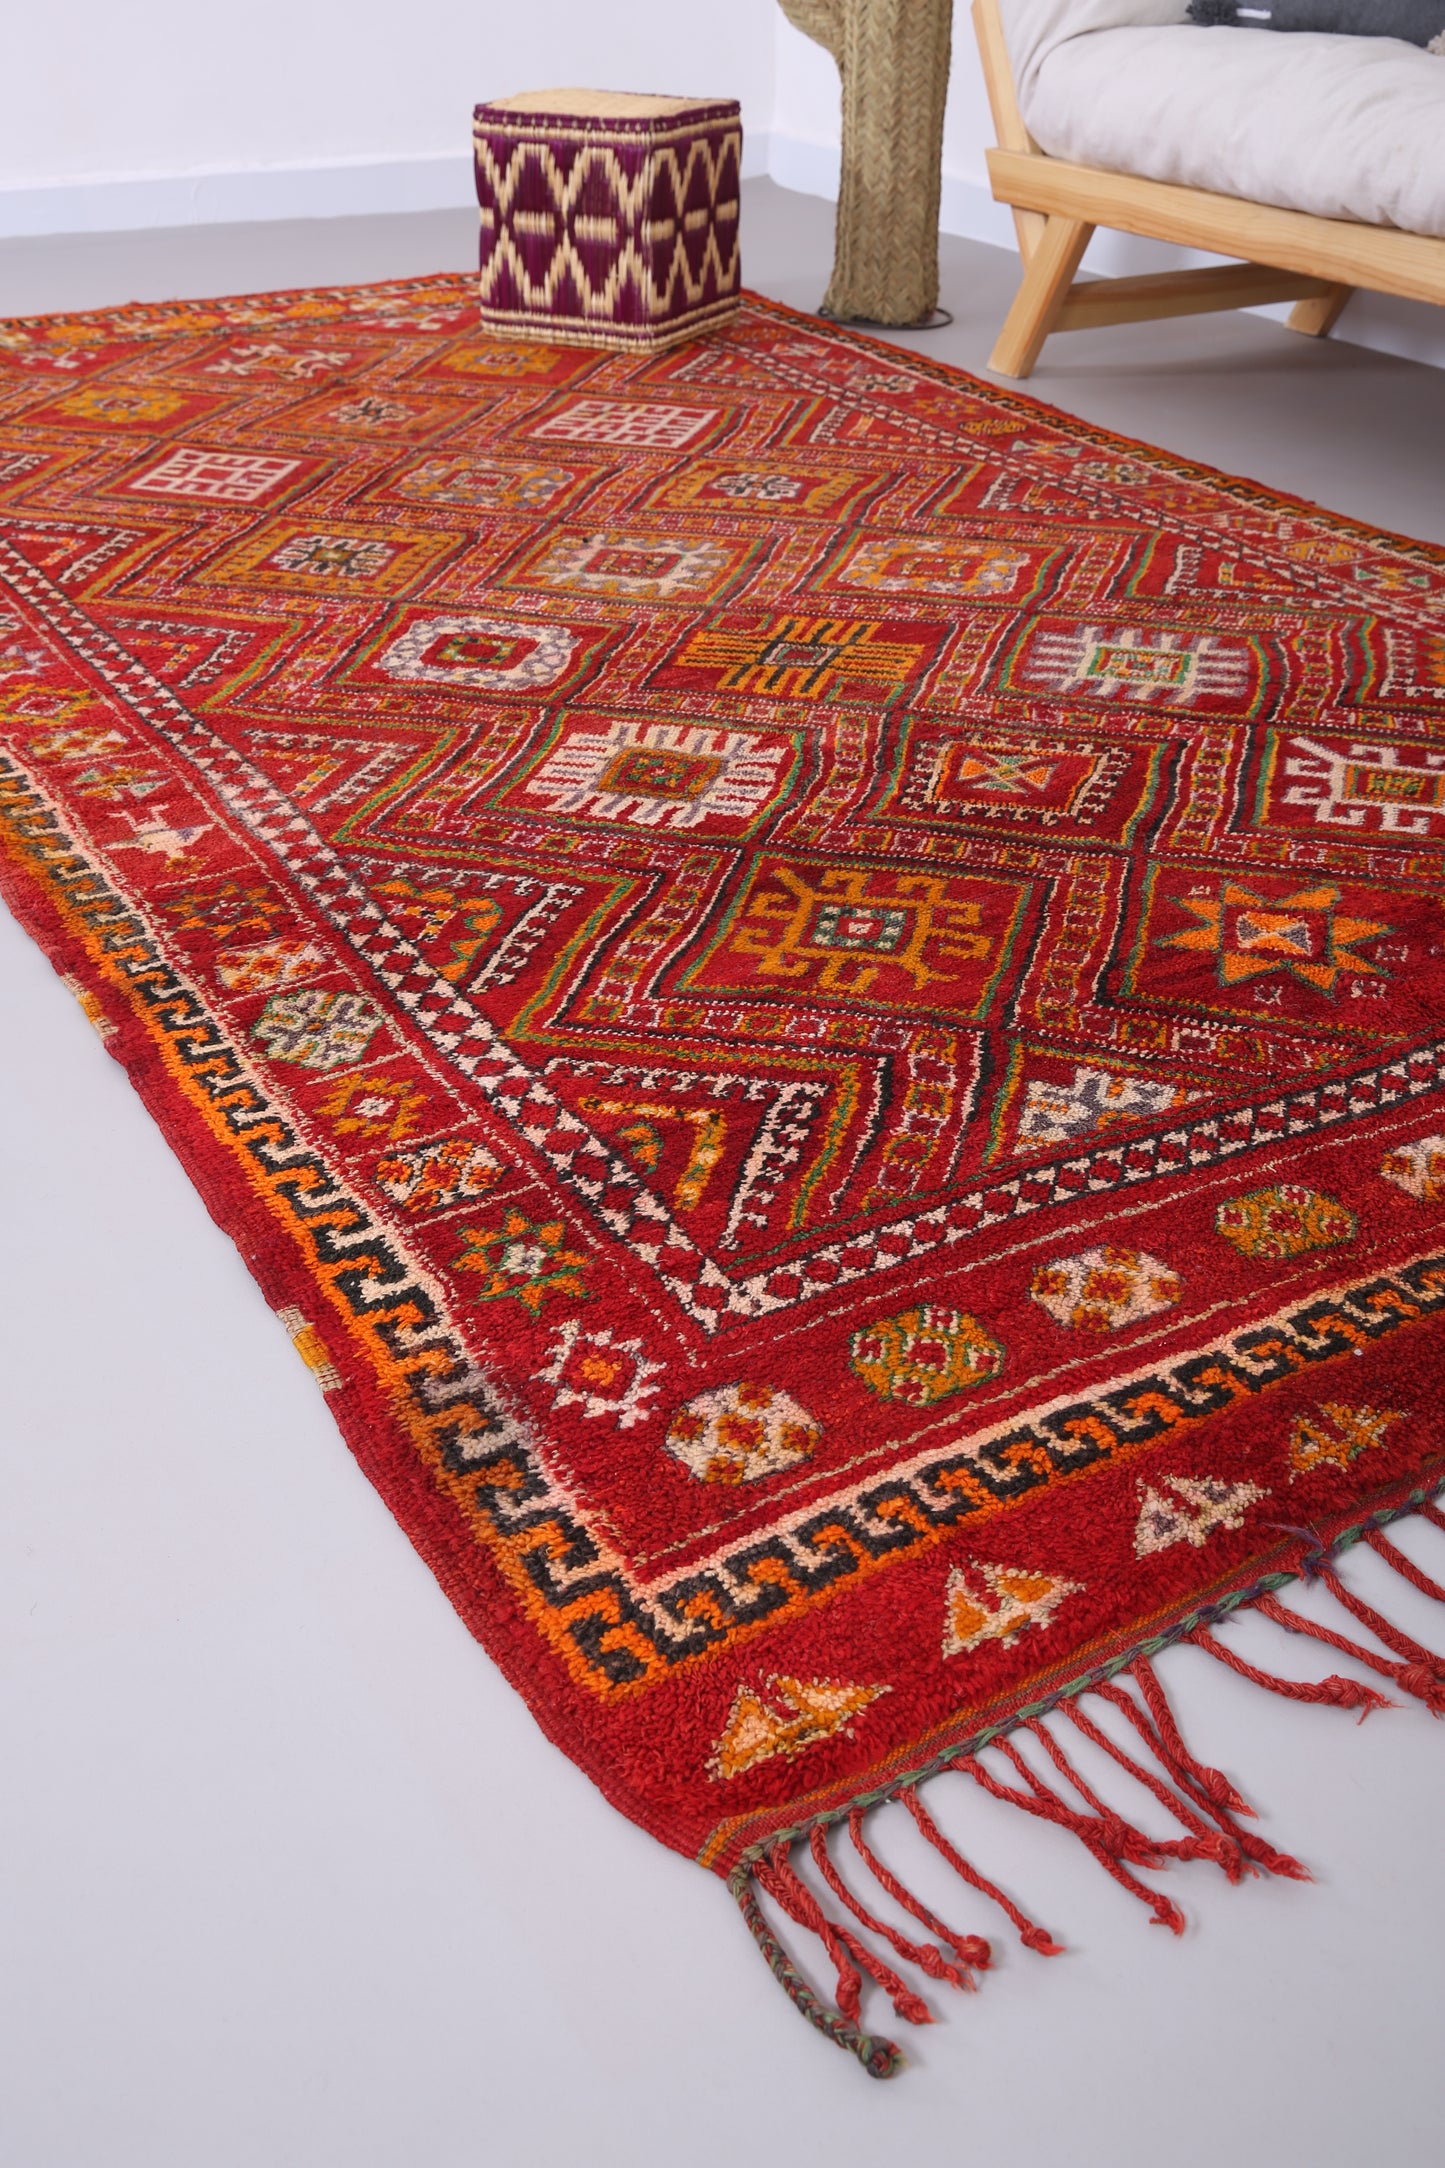 Roter Vintage Zemmouri Teppich 5,7 FT x 10,7 FT - Wohnzimmer Teppich - handgemachter Teppich - Marokko Berber Teppich - Teppich im Bohème Stil - Vintage Tribal Teppich